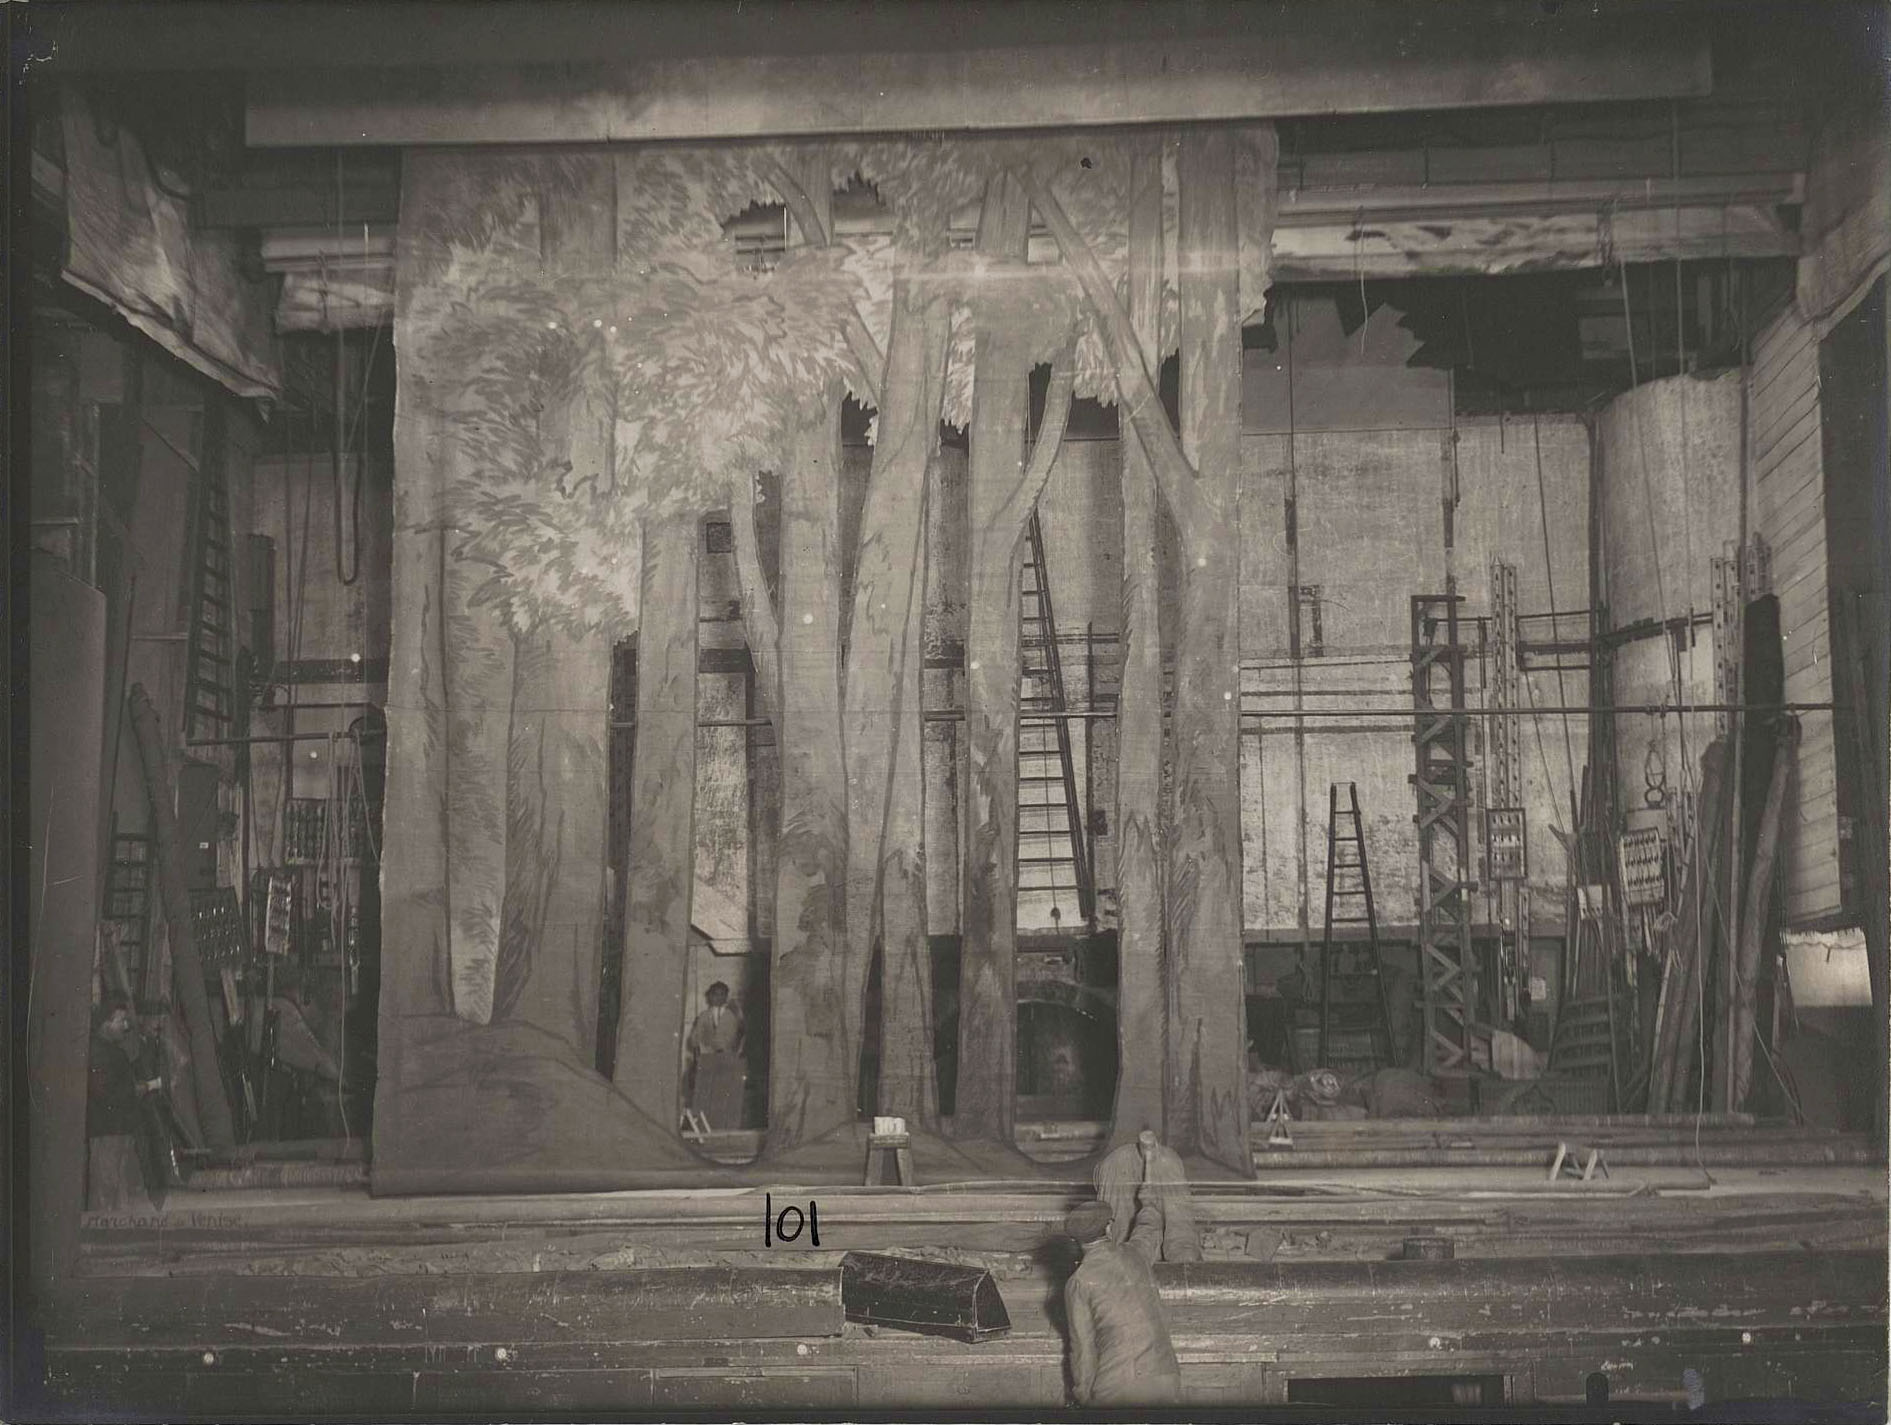 « Décor 101 », photographie de décor du Théâtre de l’Odéon, première moitié du XXe siècle. Archives nationales